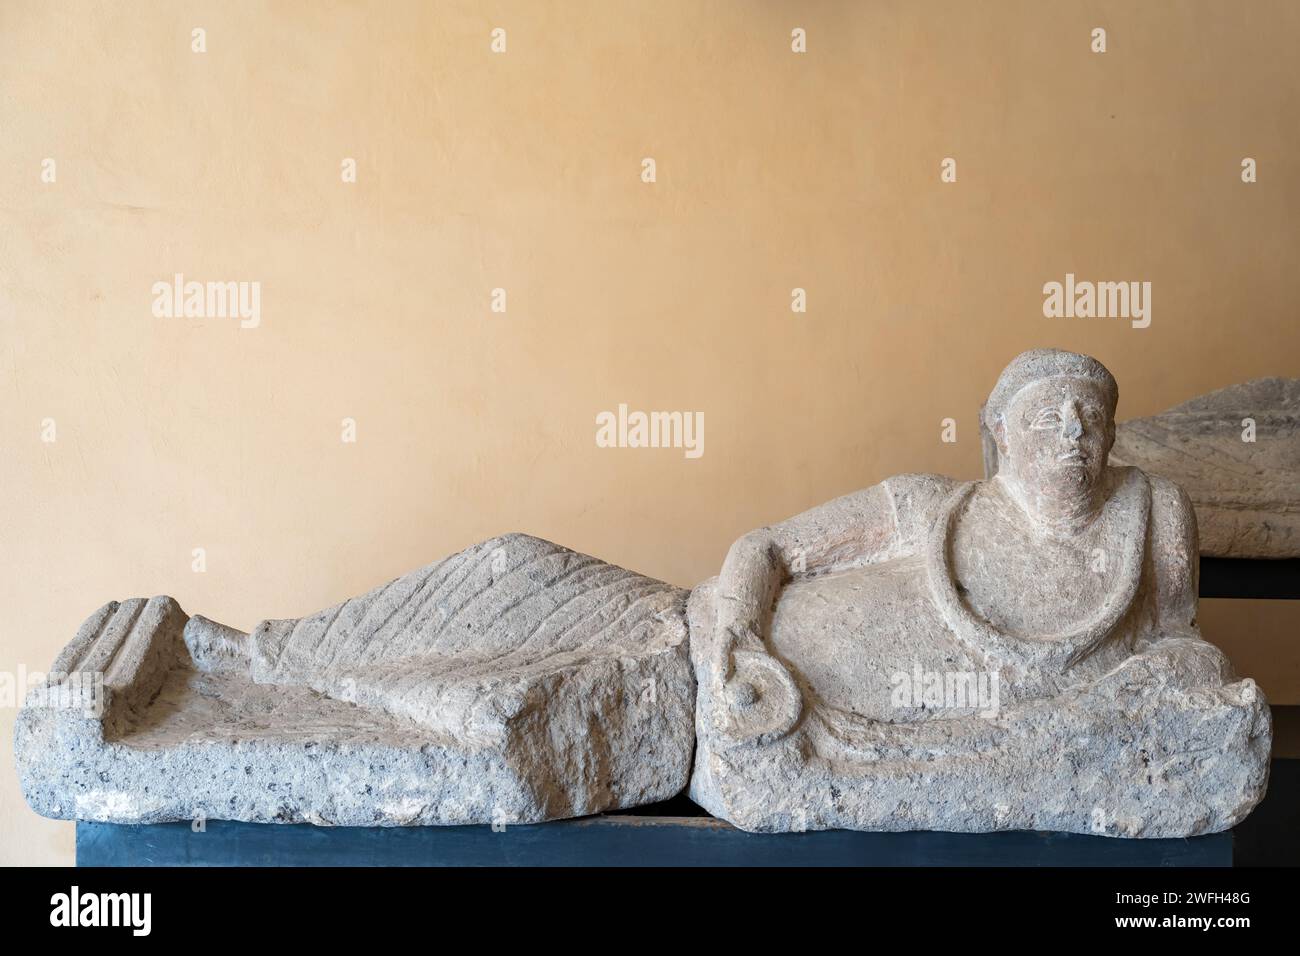 Nahaufnahme einer antiken etruskischen Statue, die in Stein gehauen ist und einen Mann darstellt, der sich niederlegt Stockfoto